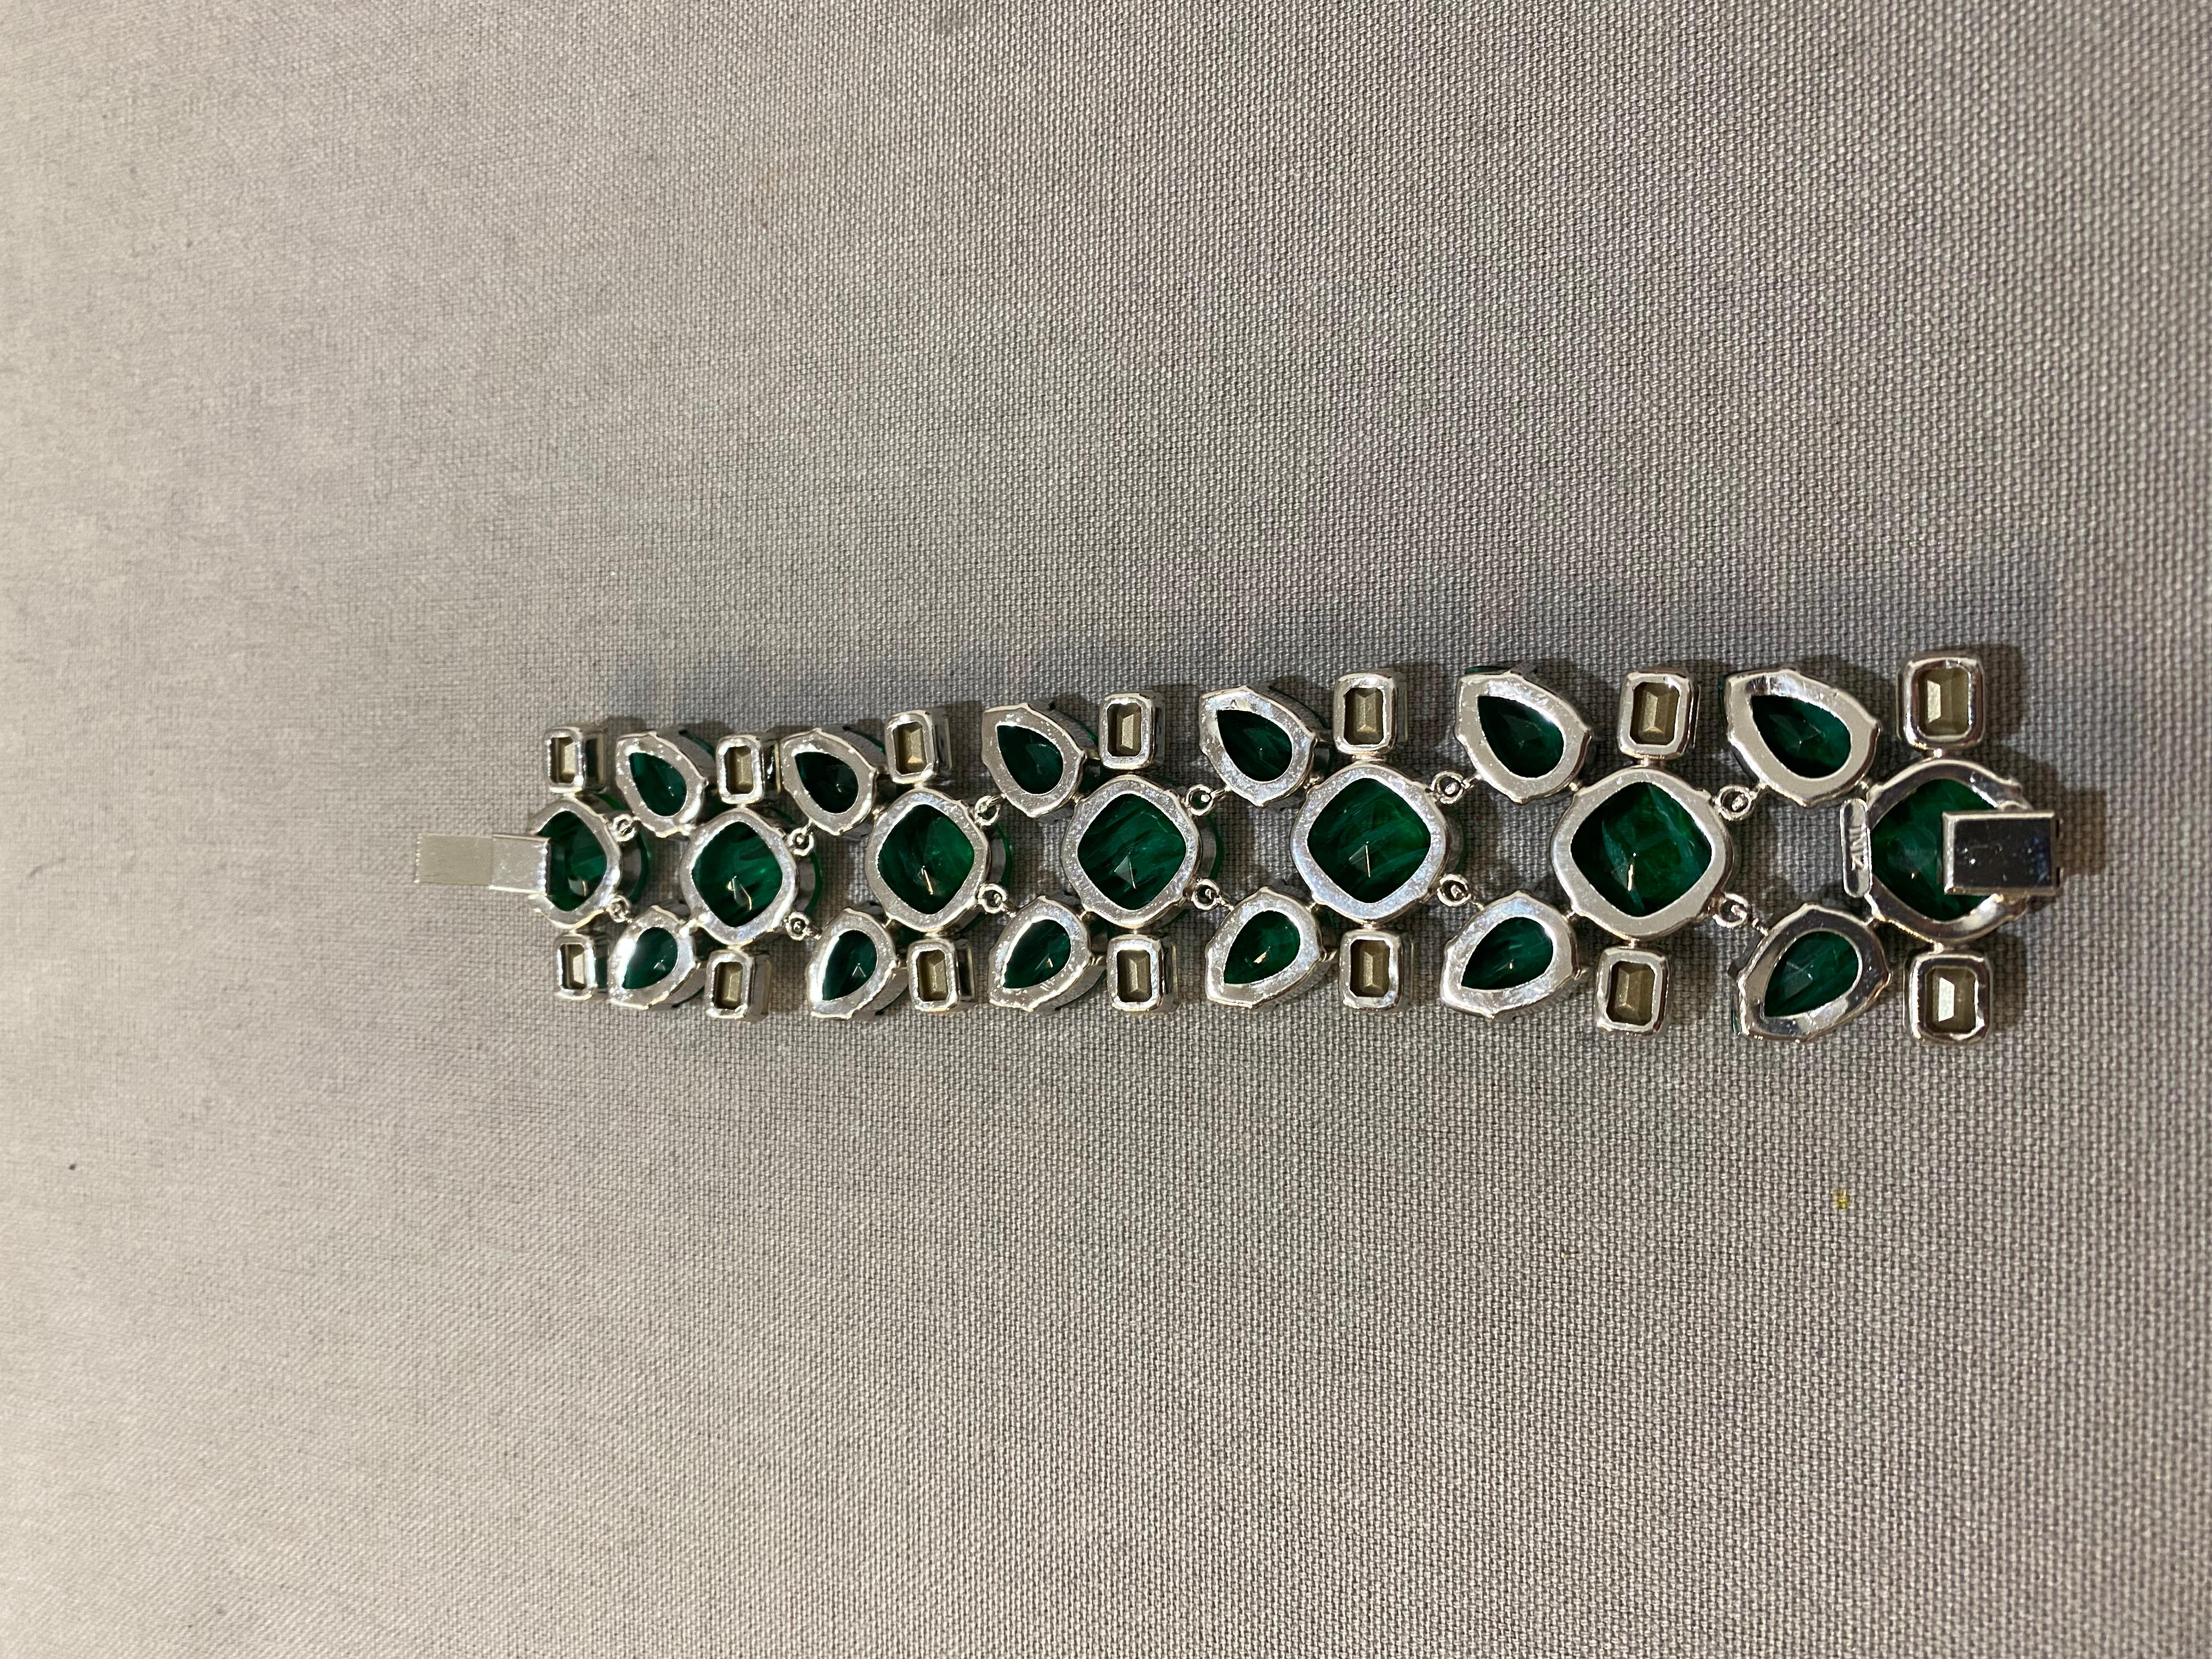 Carlo Zini Emerald Bracelet In New Condition For Sale In Gazzaniga (BG), IT